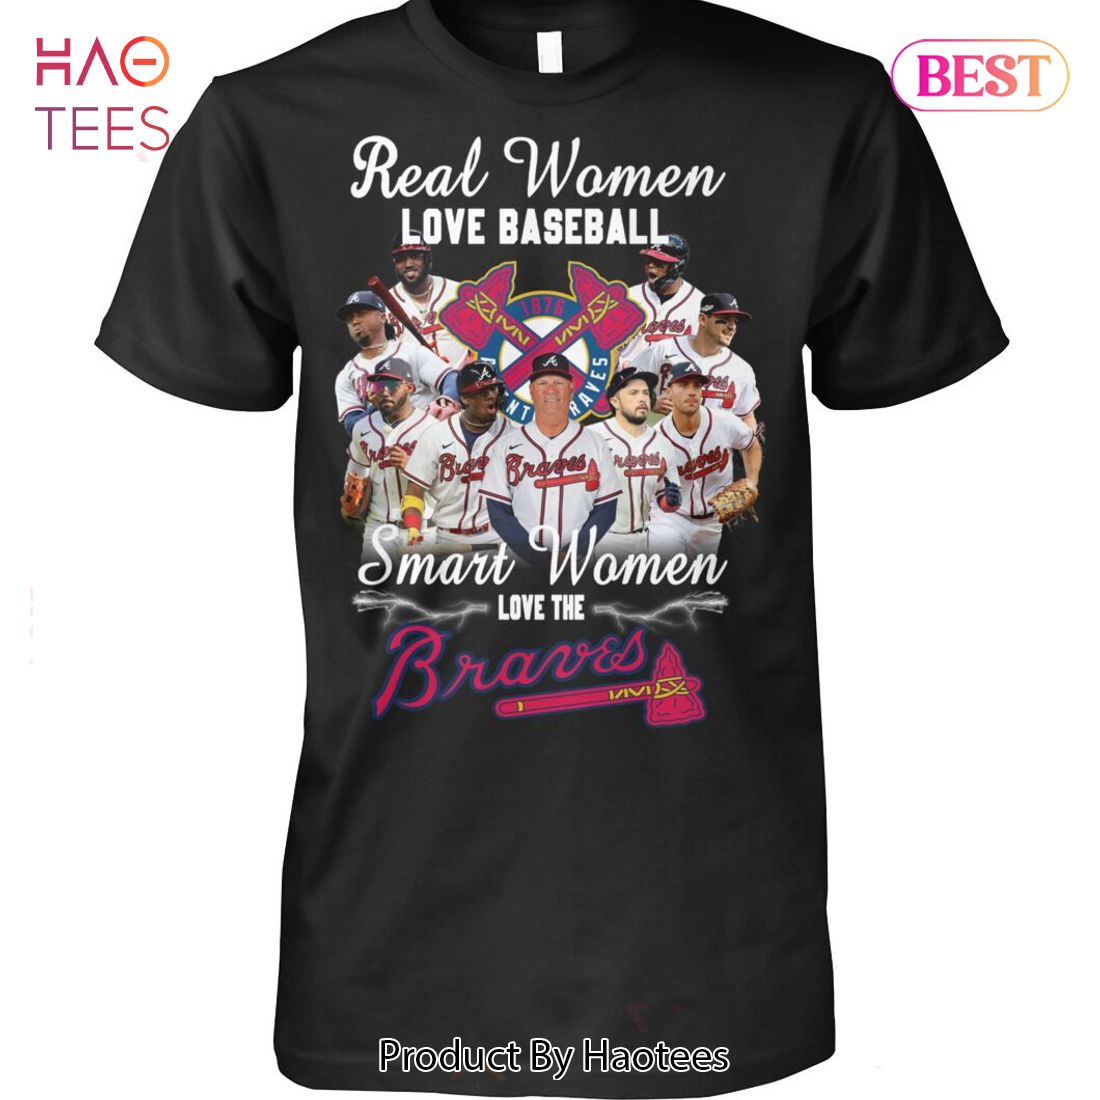 NEW!!! Atlanta Braves Baseball Team Champs 2022 T-Shirt Gift